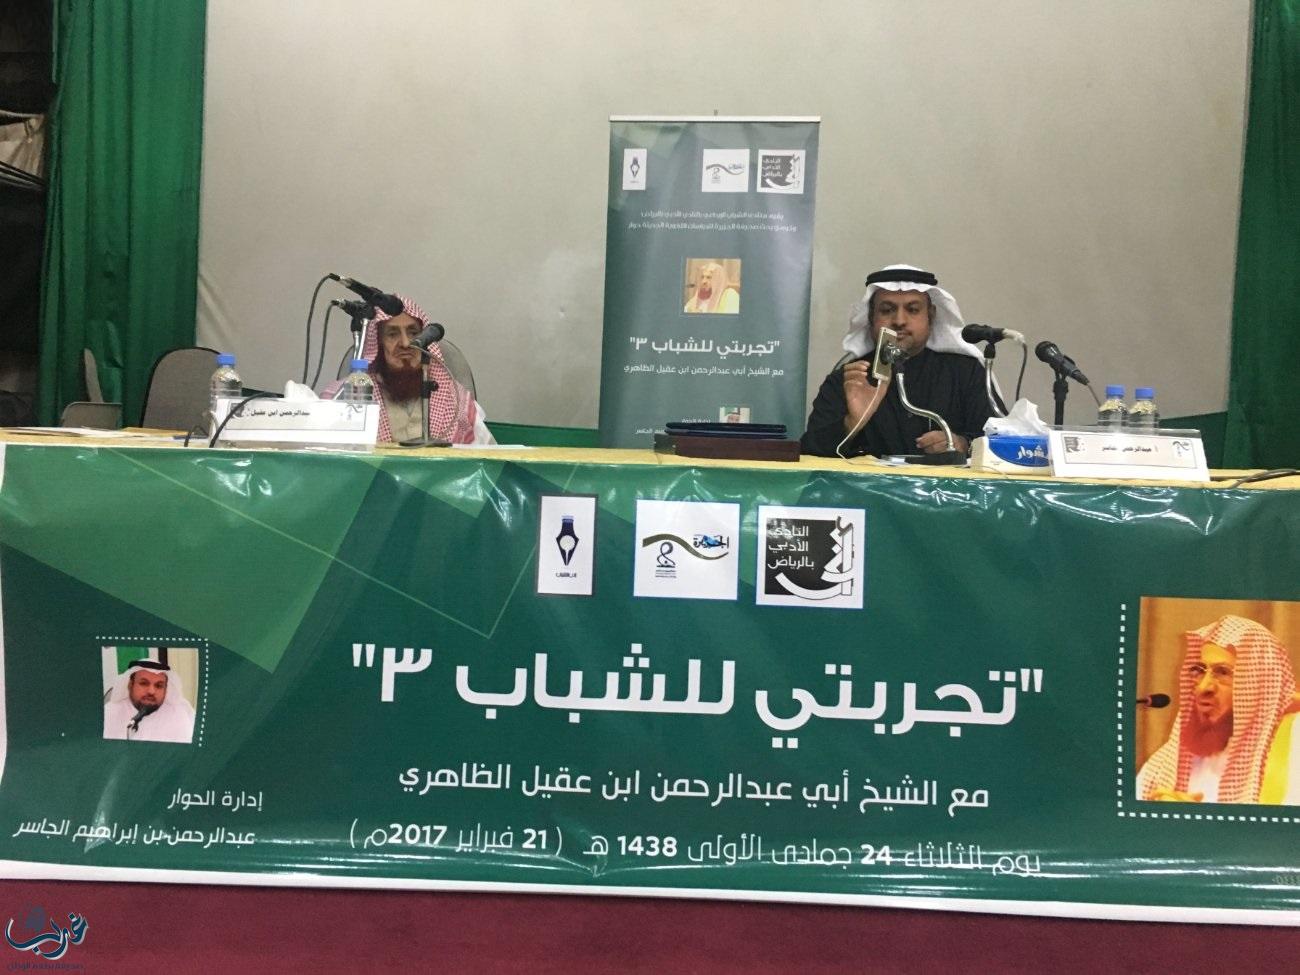 الظاهري ينقل تجربته إلى الشباب في أدبي الرياض